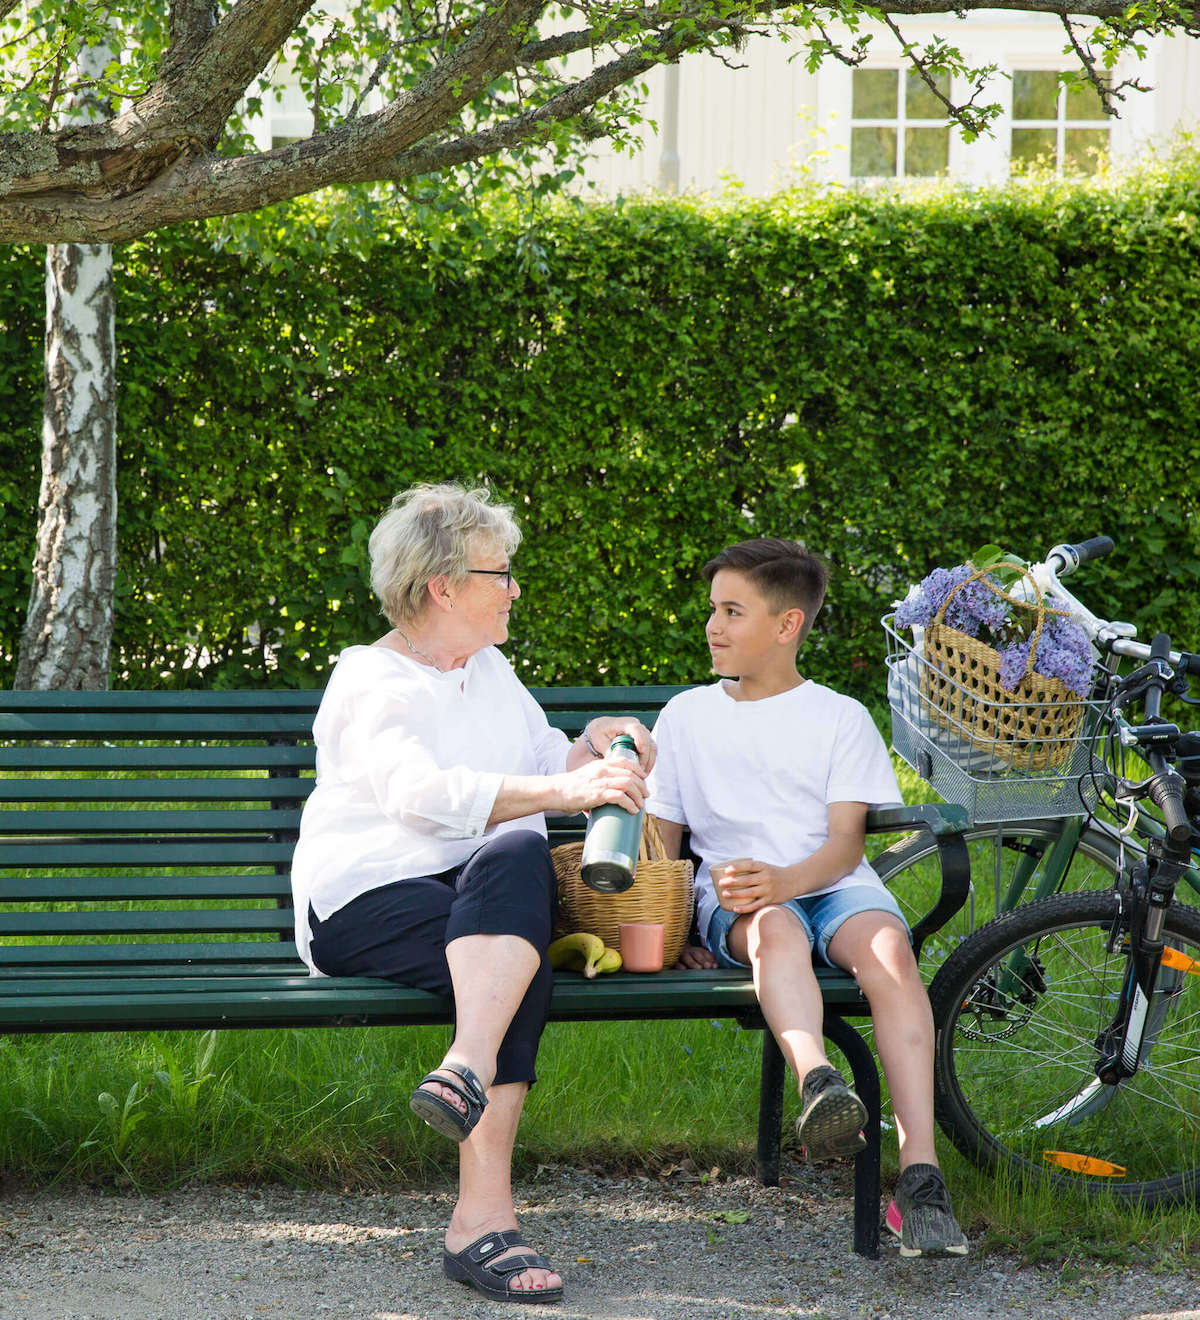 Äldre kvinna och pojke sitter på en parkbänk i somrig park